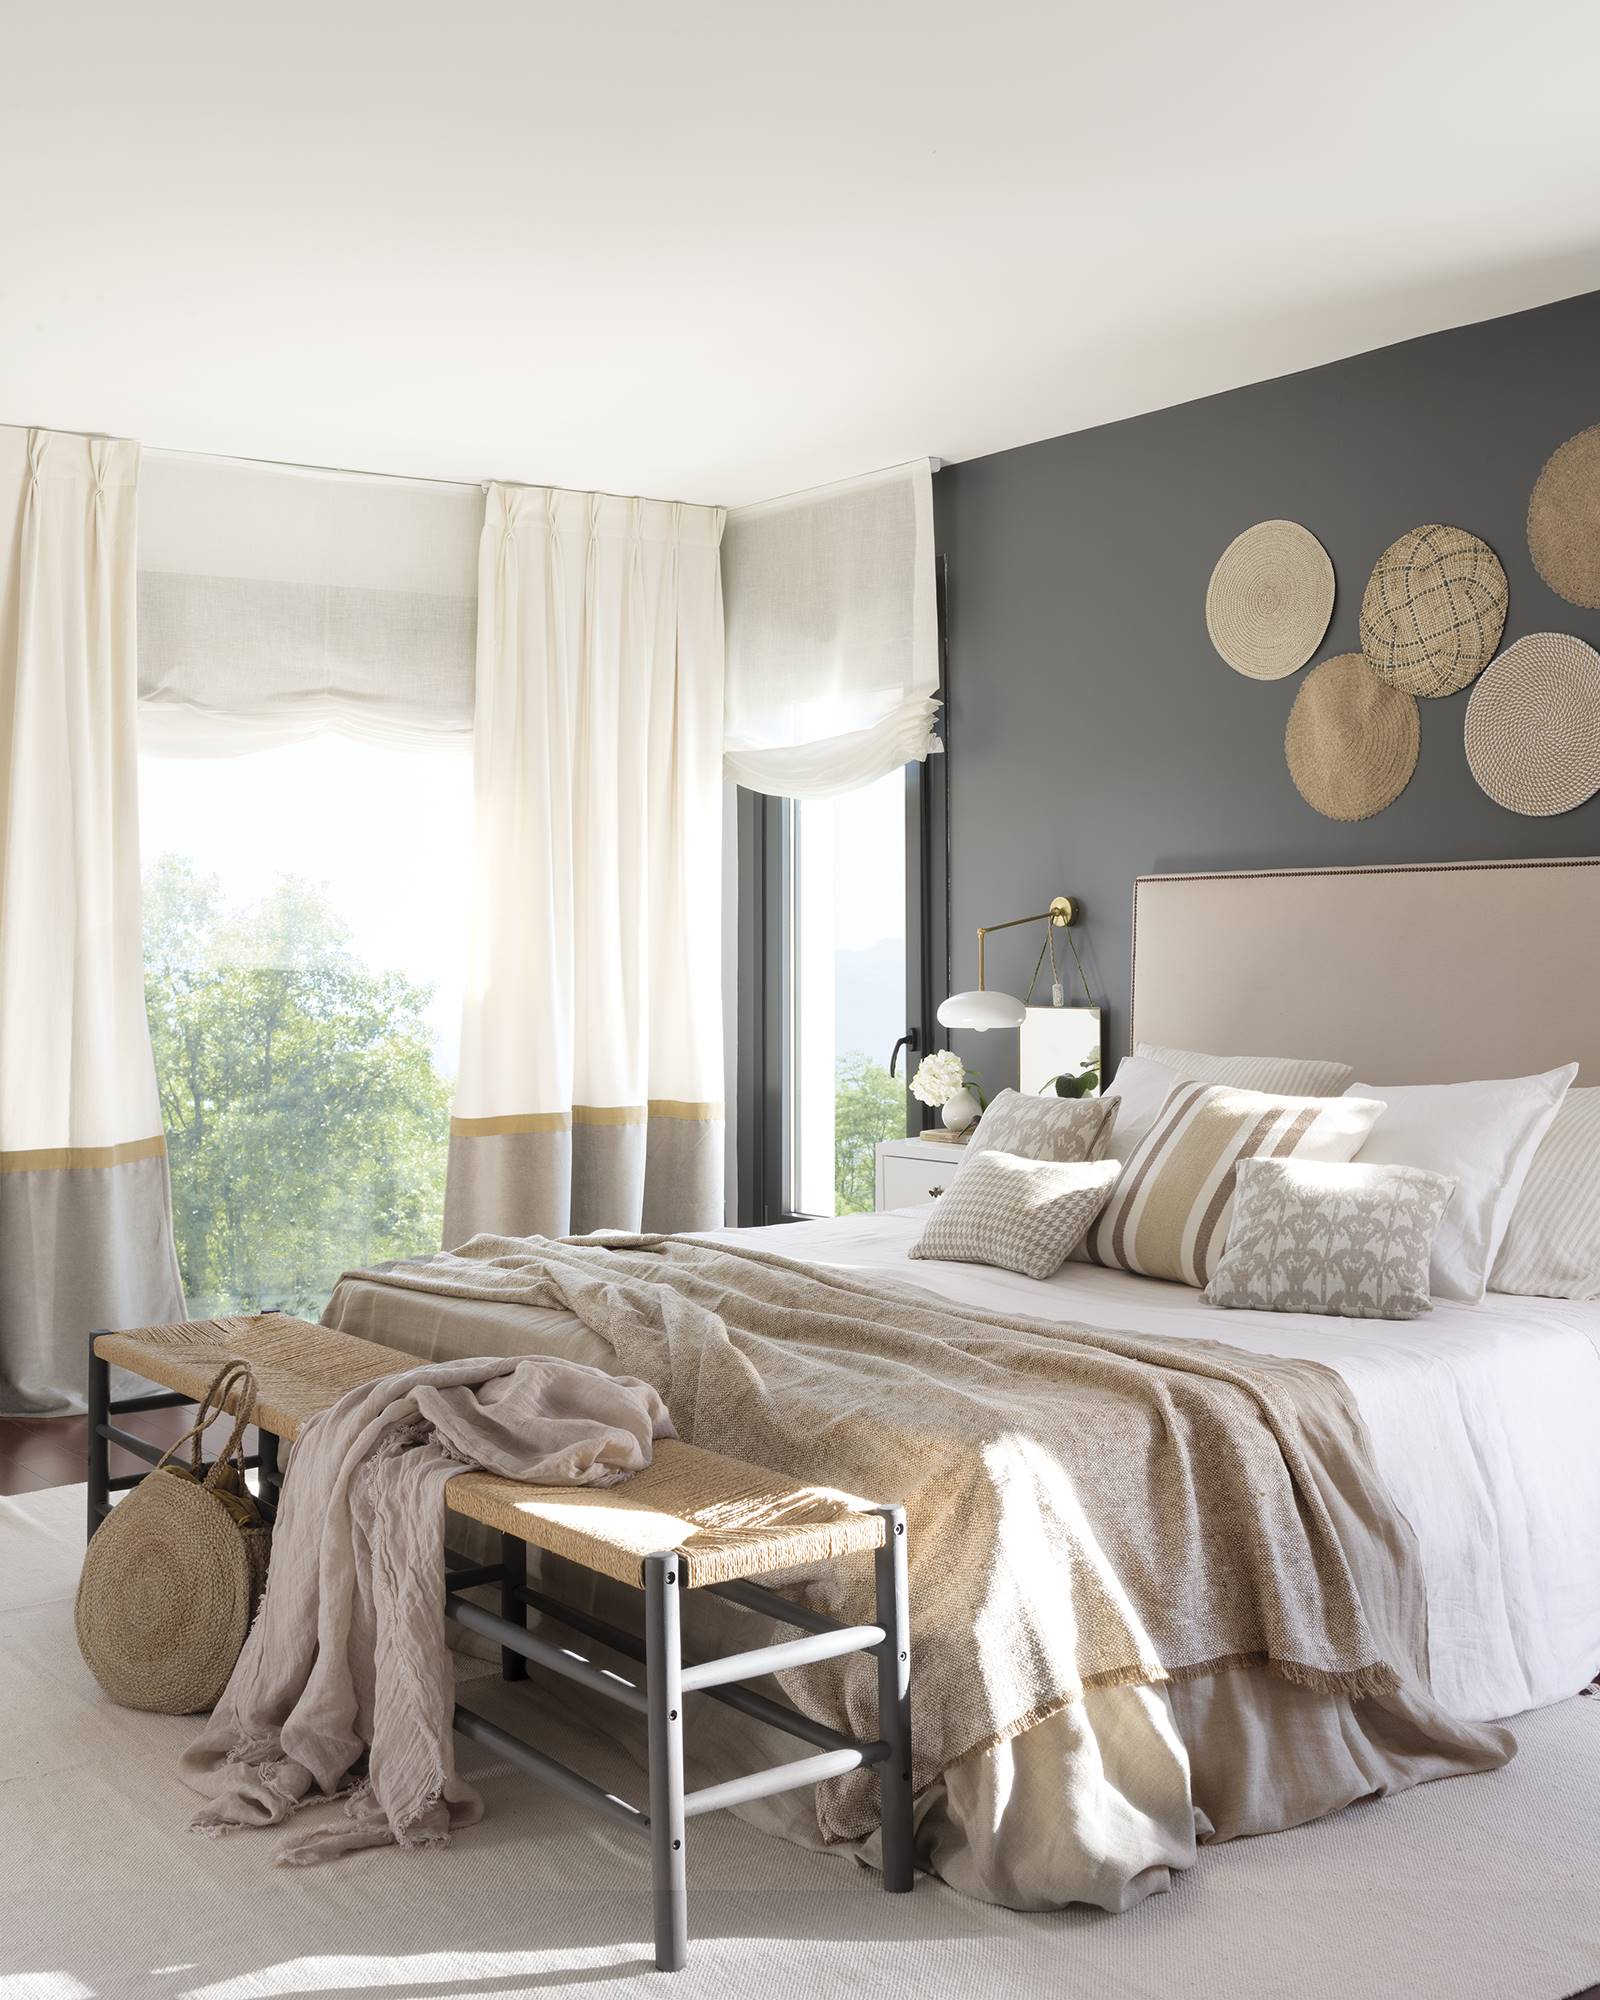 Dormitorio en tonos crudos con pared pintada de gris oscuro con banco a pié de cama de la casa de Paula Duarte.